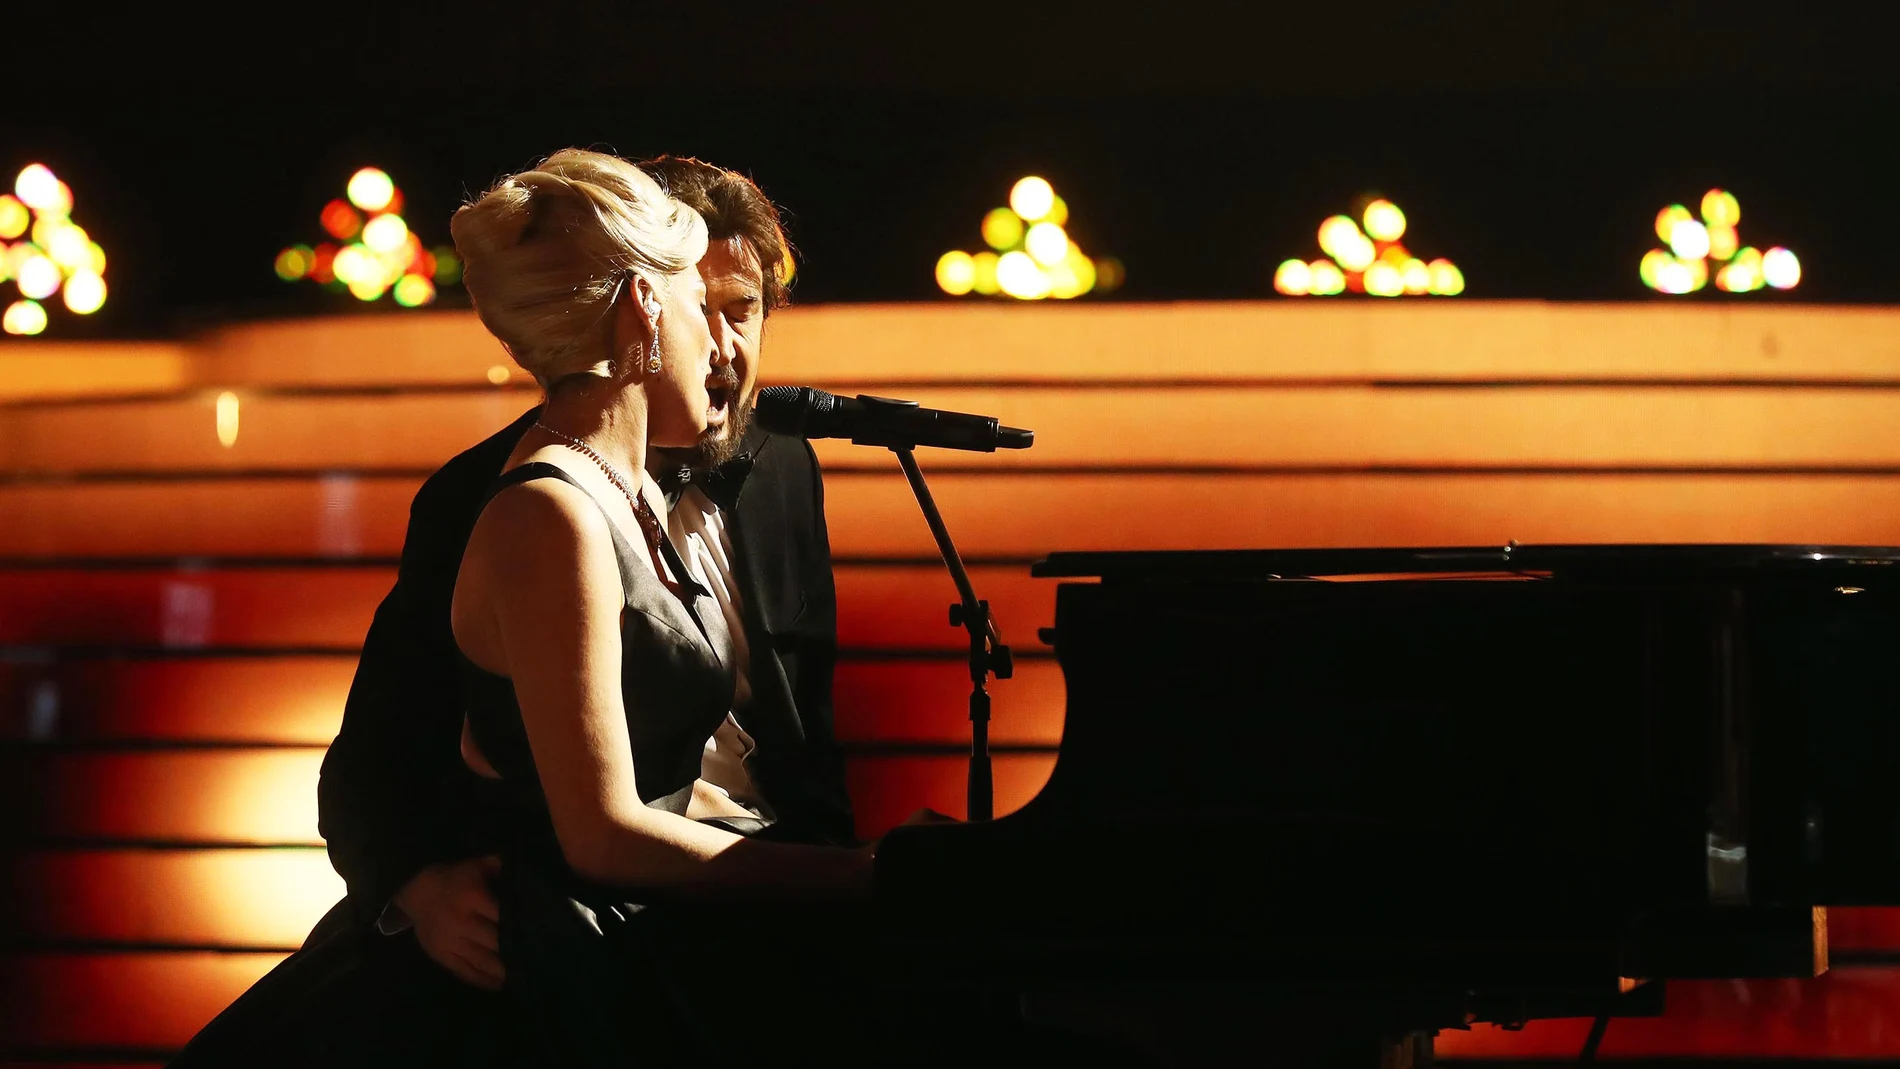 La mágica actuación de Rocío Madrid y Álex O'Dogherty como Lady Gaga y Bradley Cooper en ‘Shallow’